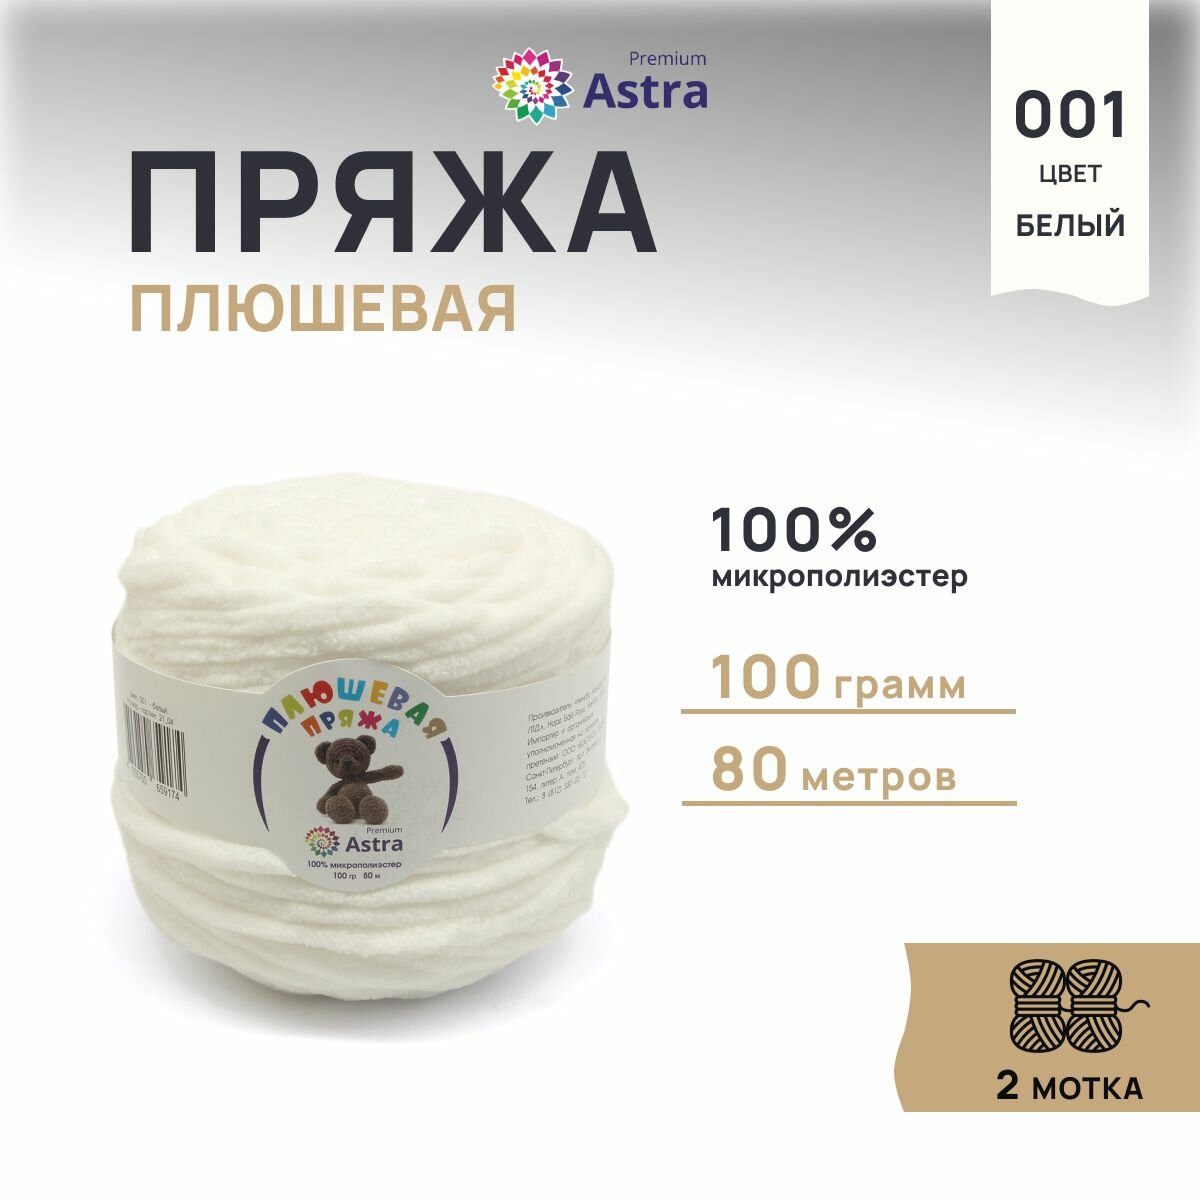 Пряжа для вязания Astra Premium 'Плюшевая', 100г, 80м (100% микрополиэстер) (001 белый), 2 мотка